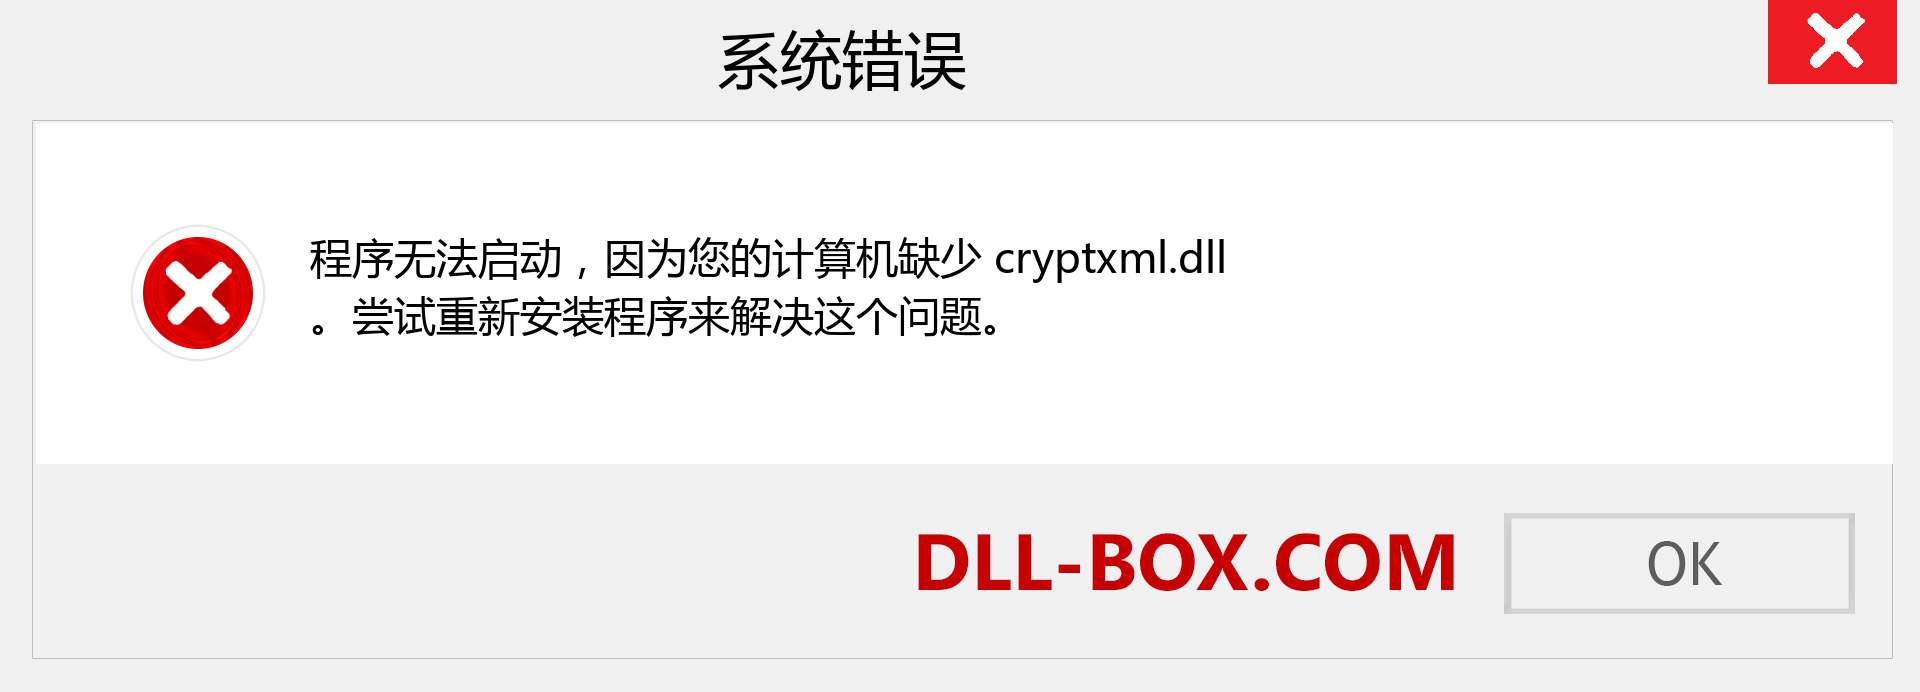 cryptxml.dll 文件丢失？。 适用于 Windows 7、8、10 的下载 - 修复 Windows、照片、图像上的 cryptxml dll 丢失错误